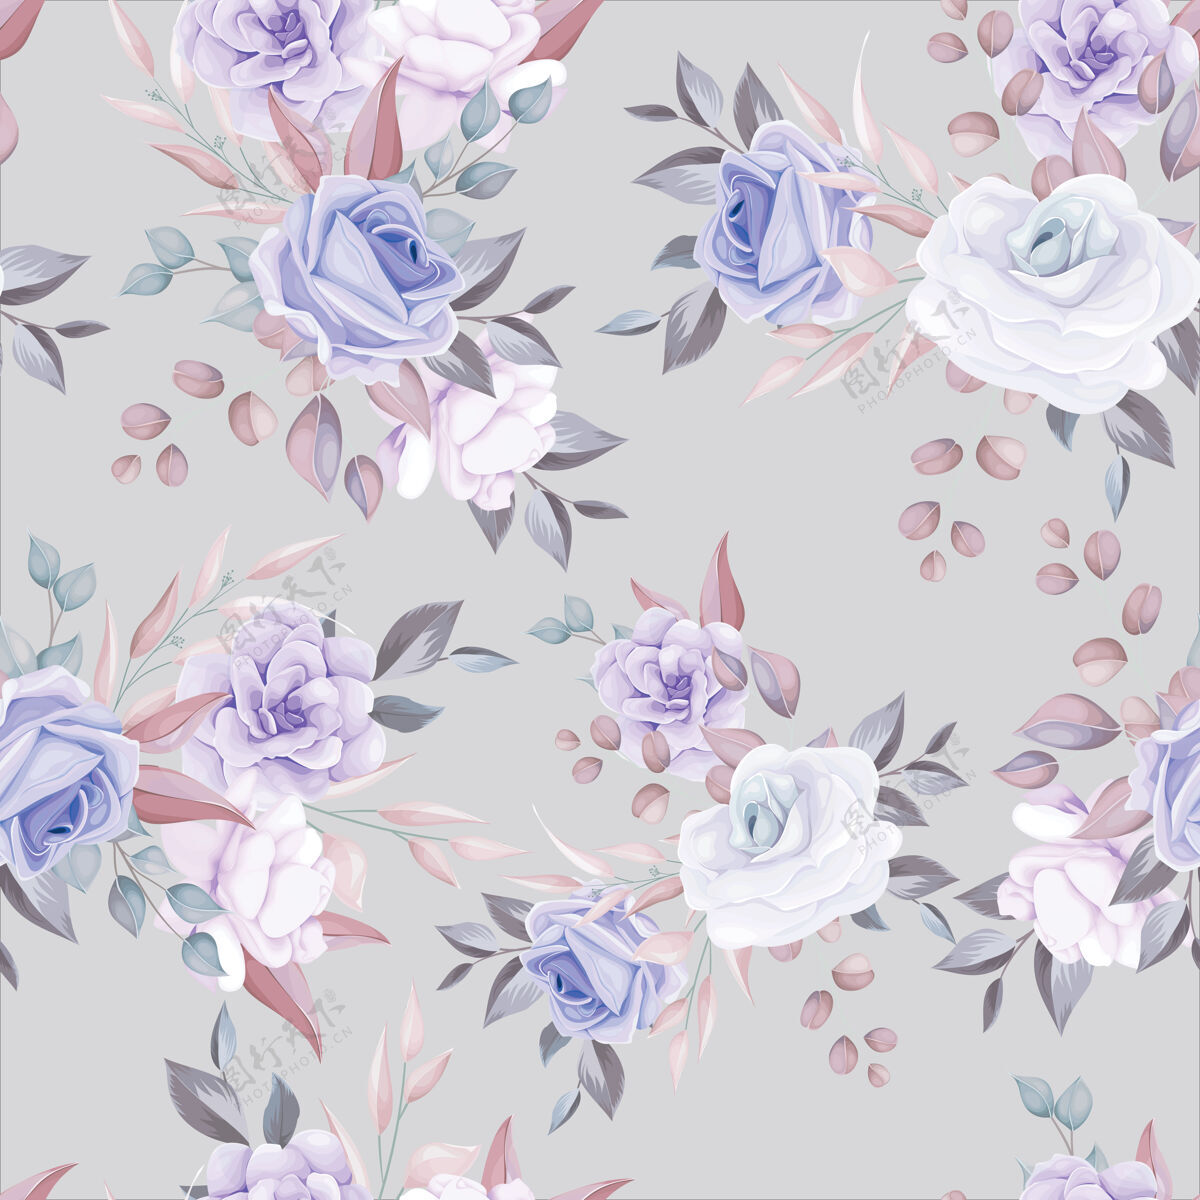 水彩浪漫的花朵无缝图案搭配紫色花朵装饰花卉玫瑰浪漫